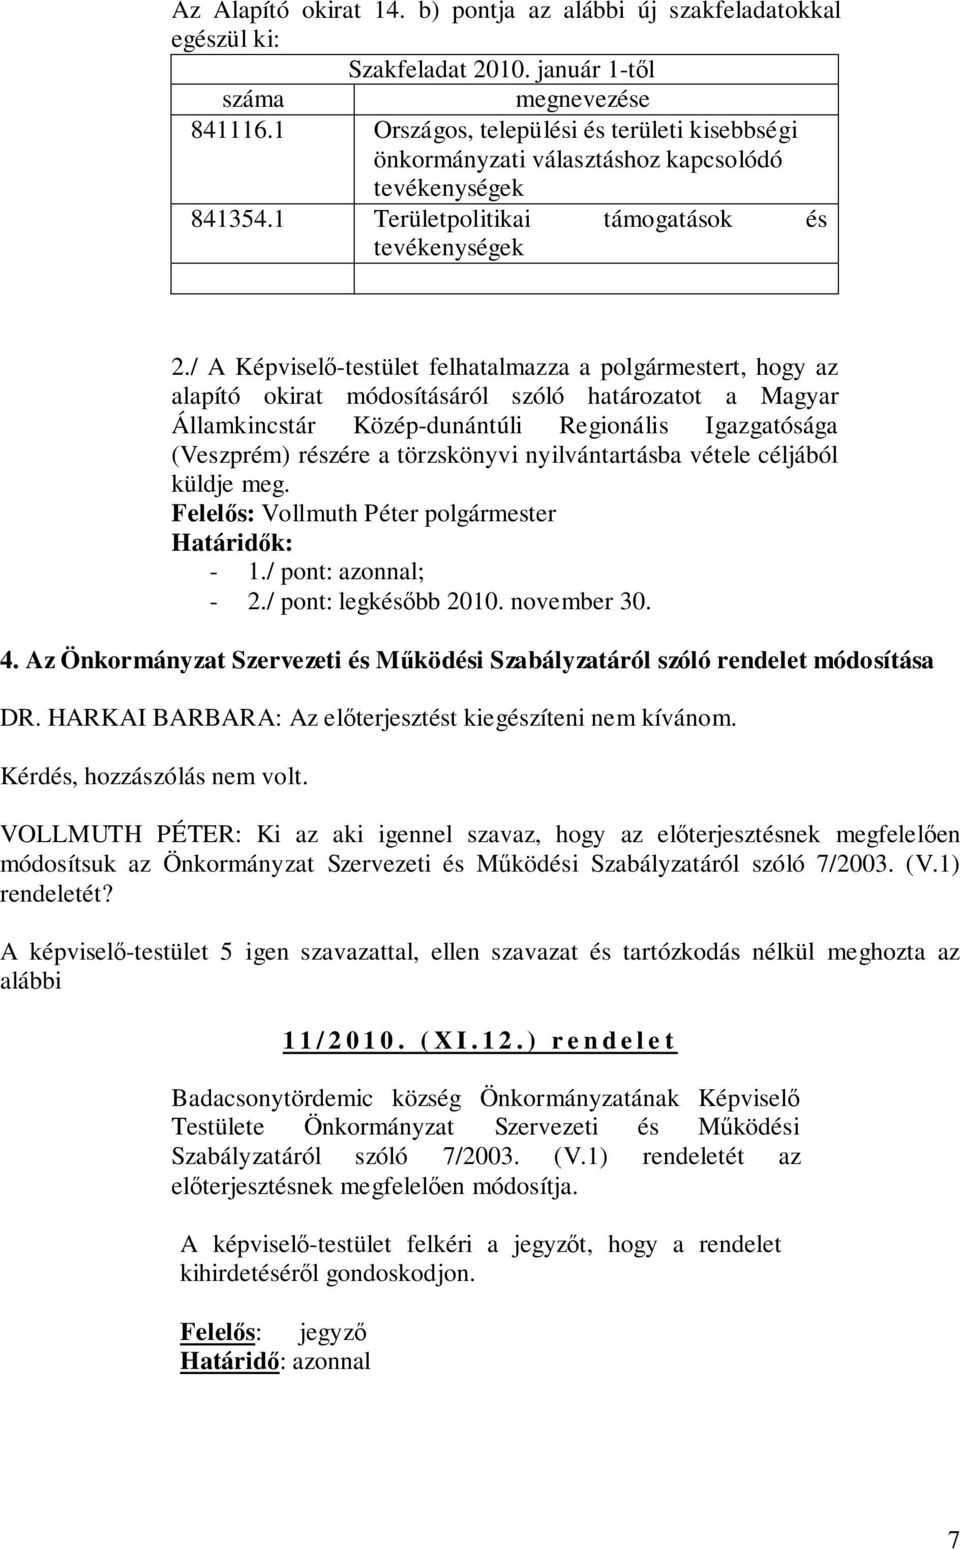 / A Képviselő-testület felhatalmazza a polgármestert, hogy az alapító okirat módosításáról szóló határozatot a Magyar Államkincstár Közép-dunántúli Regionális Igazgatósága (Veszprém) részére a